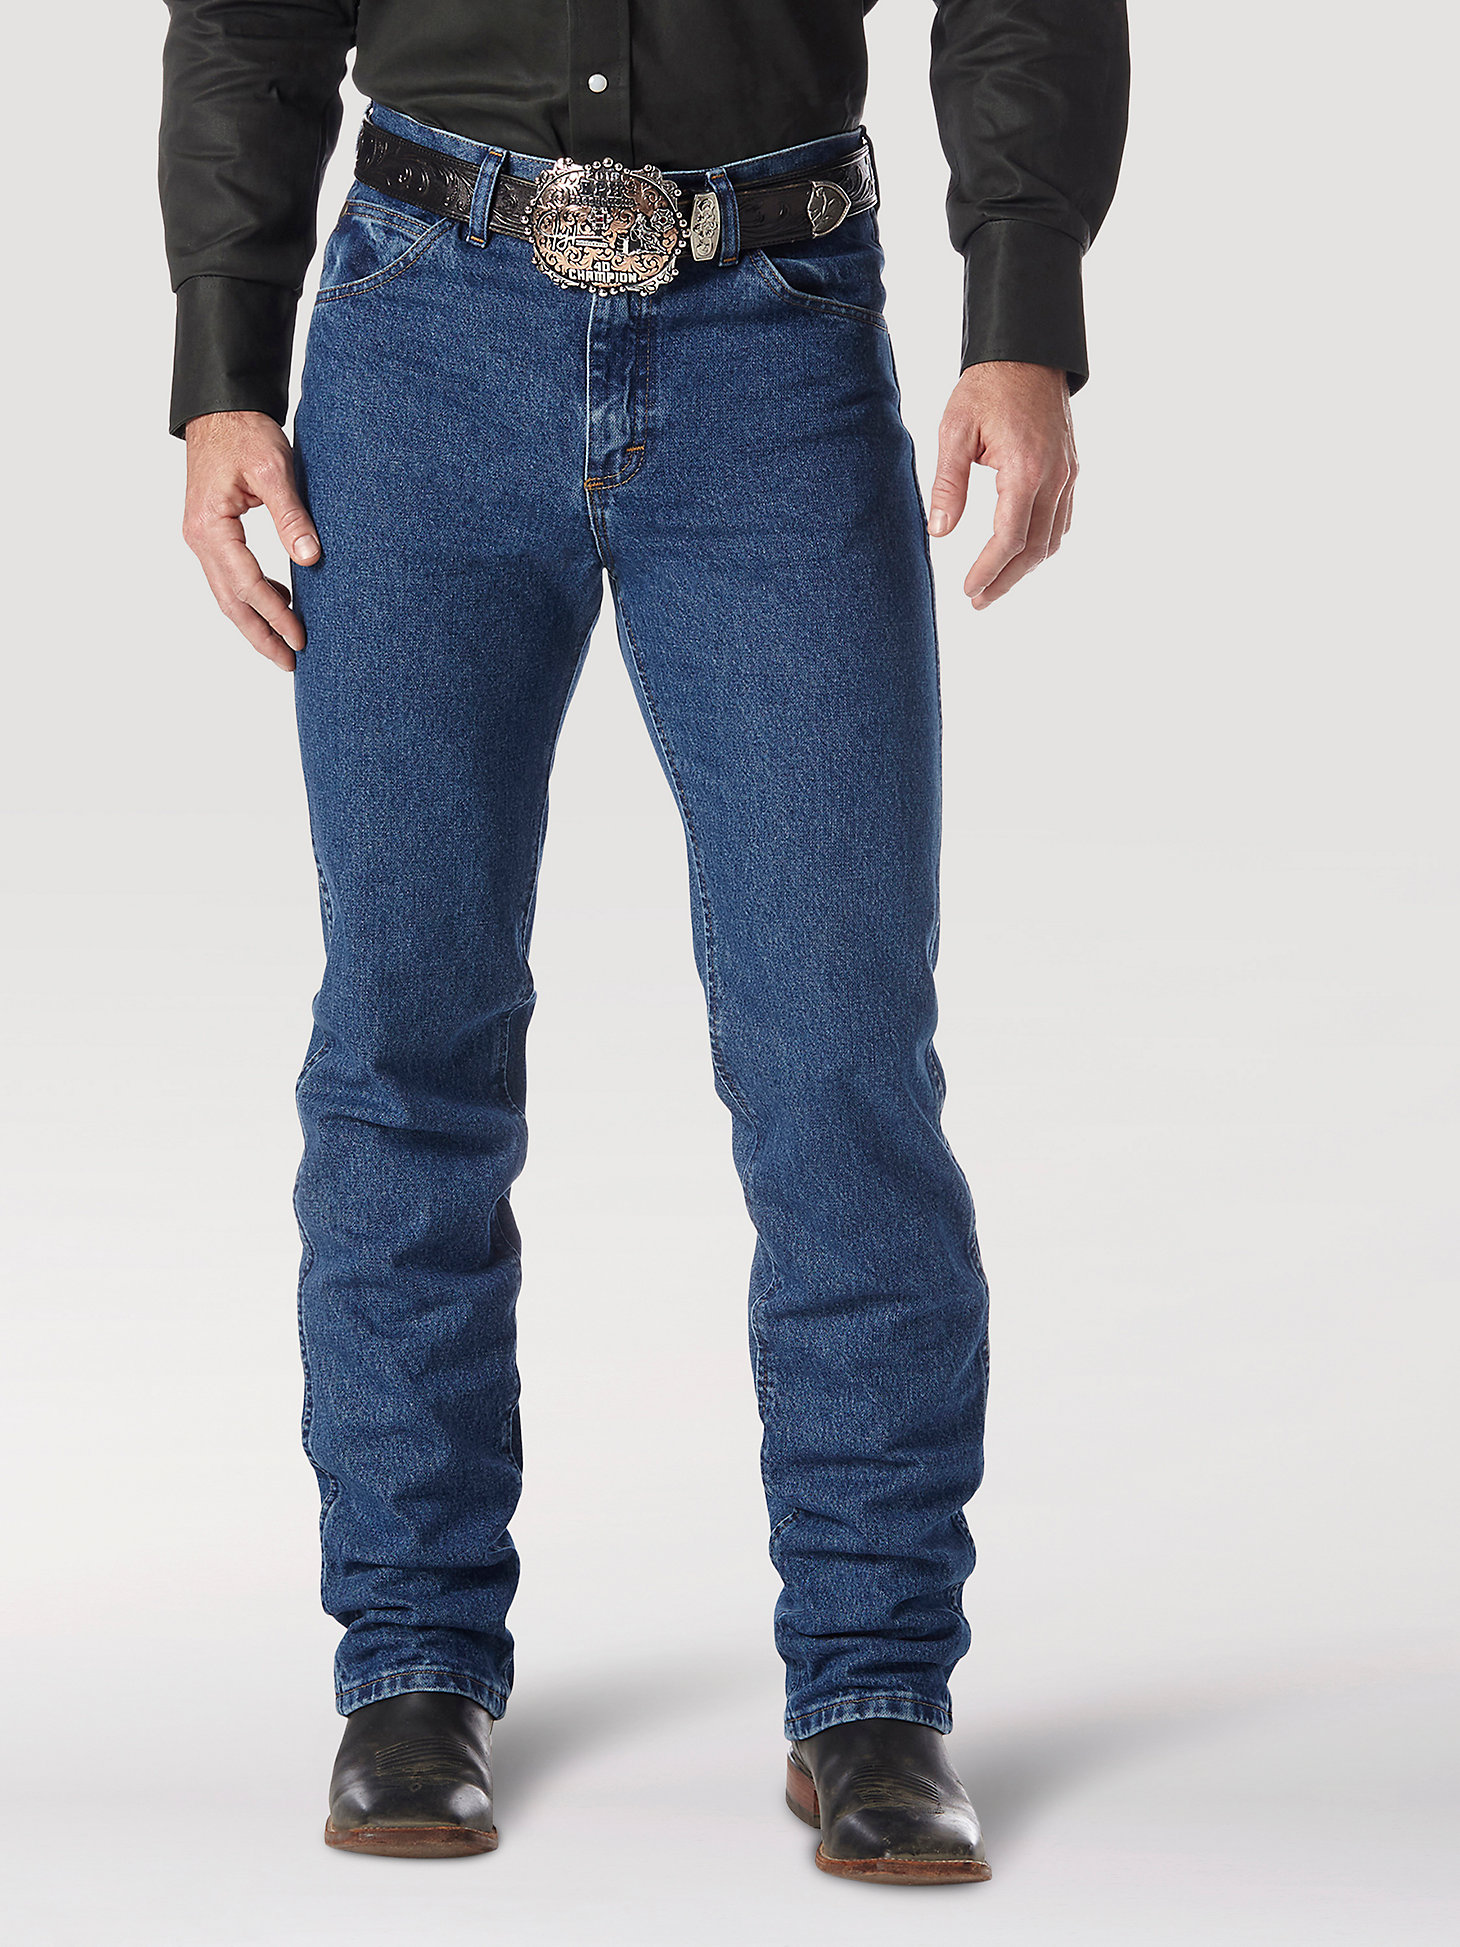 Wrangler Mens Premium Performance Cowboy Cut Slim Fit Jean